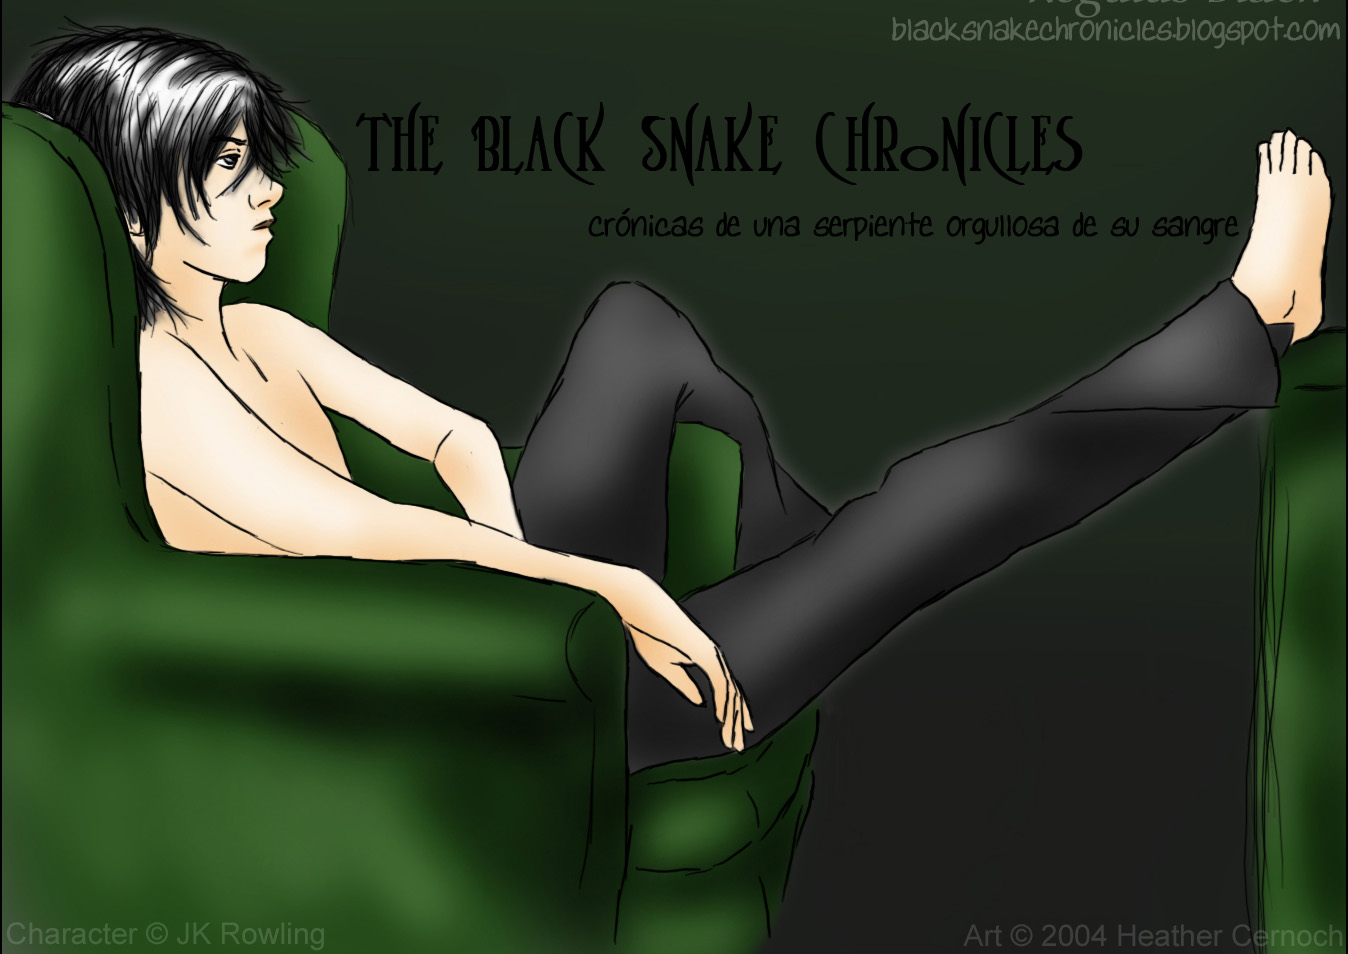 The Black Snake Chronicles